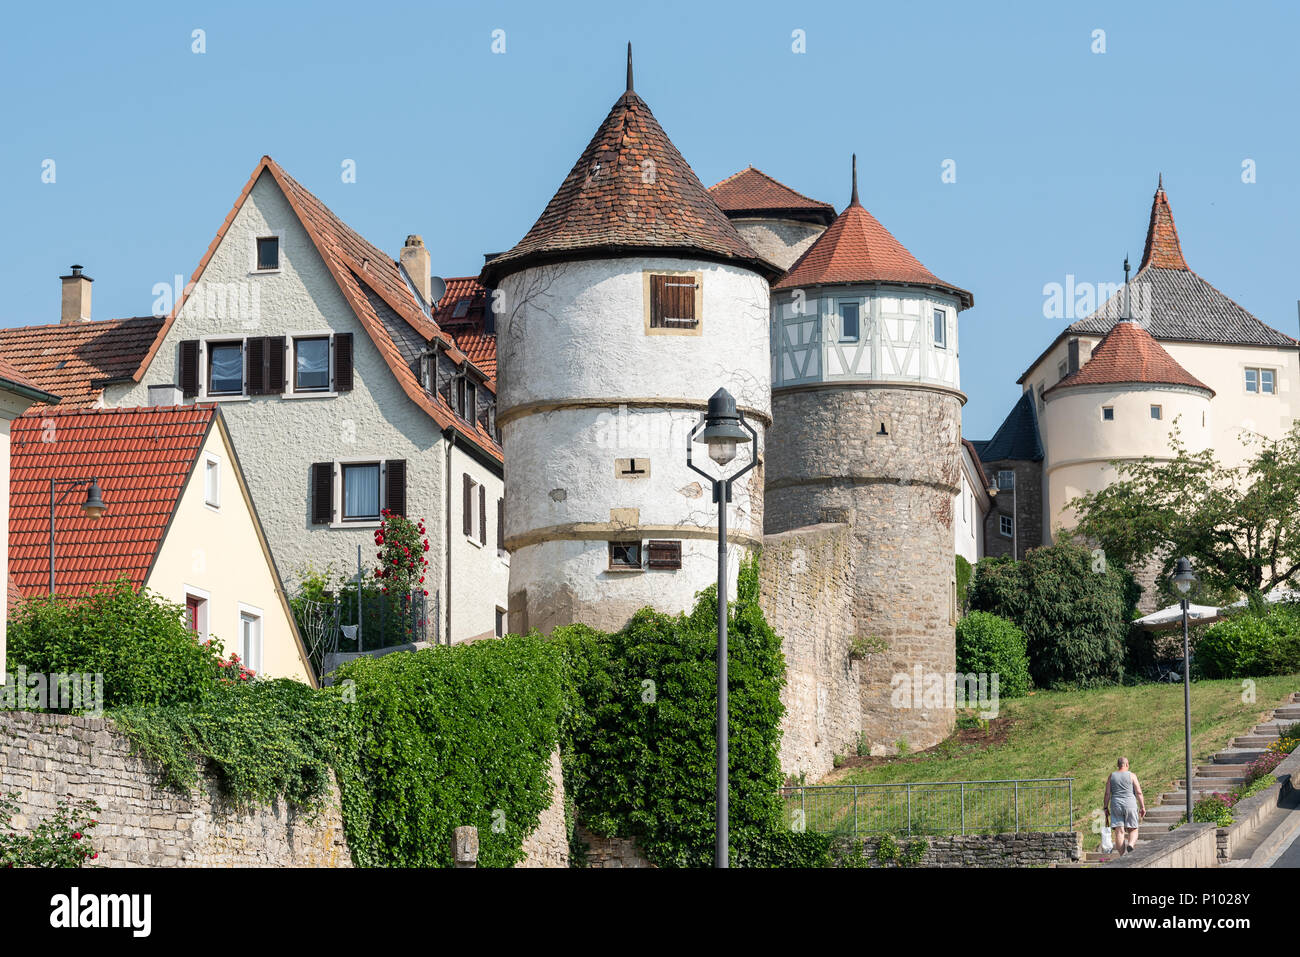 City walls of Dettelbach, Germany Stock Photo